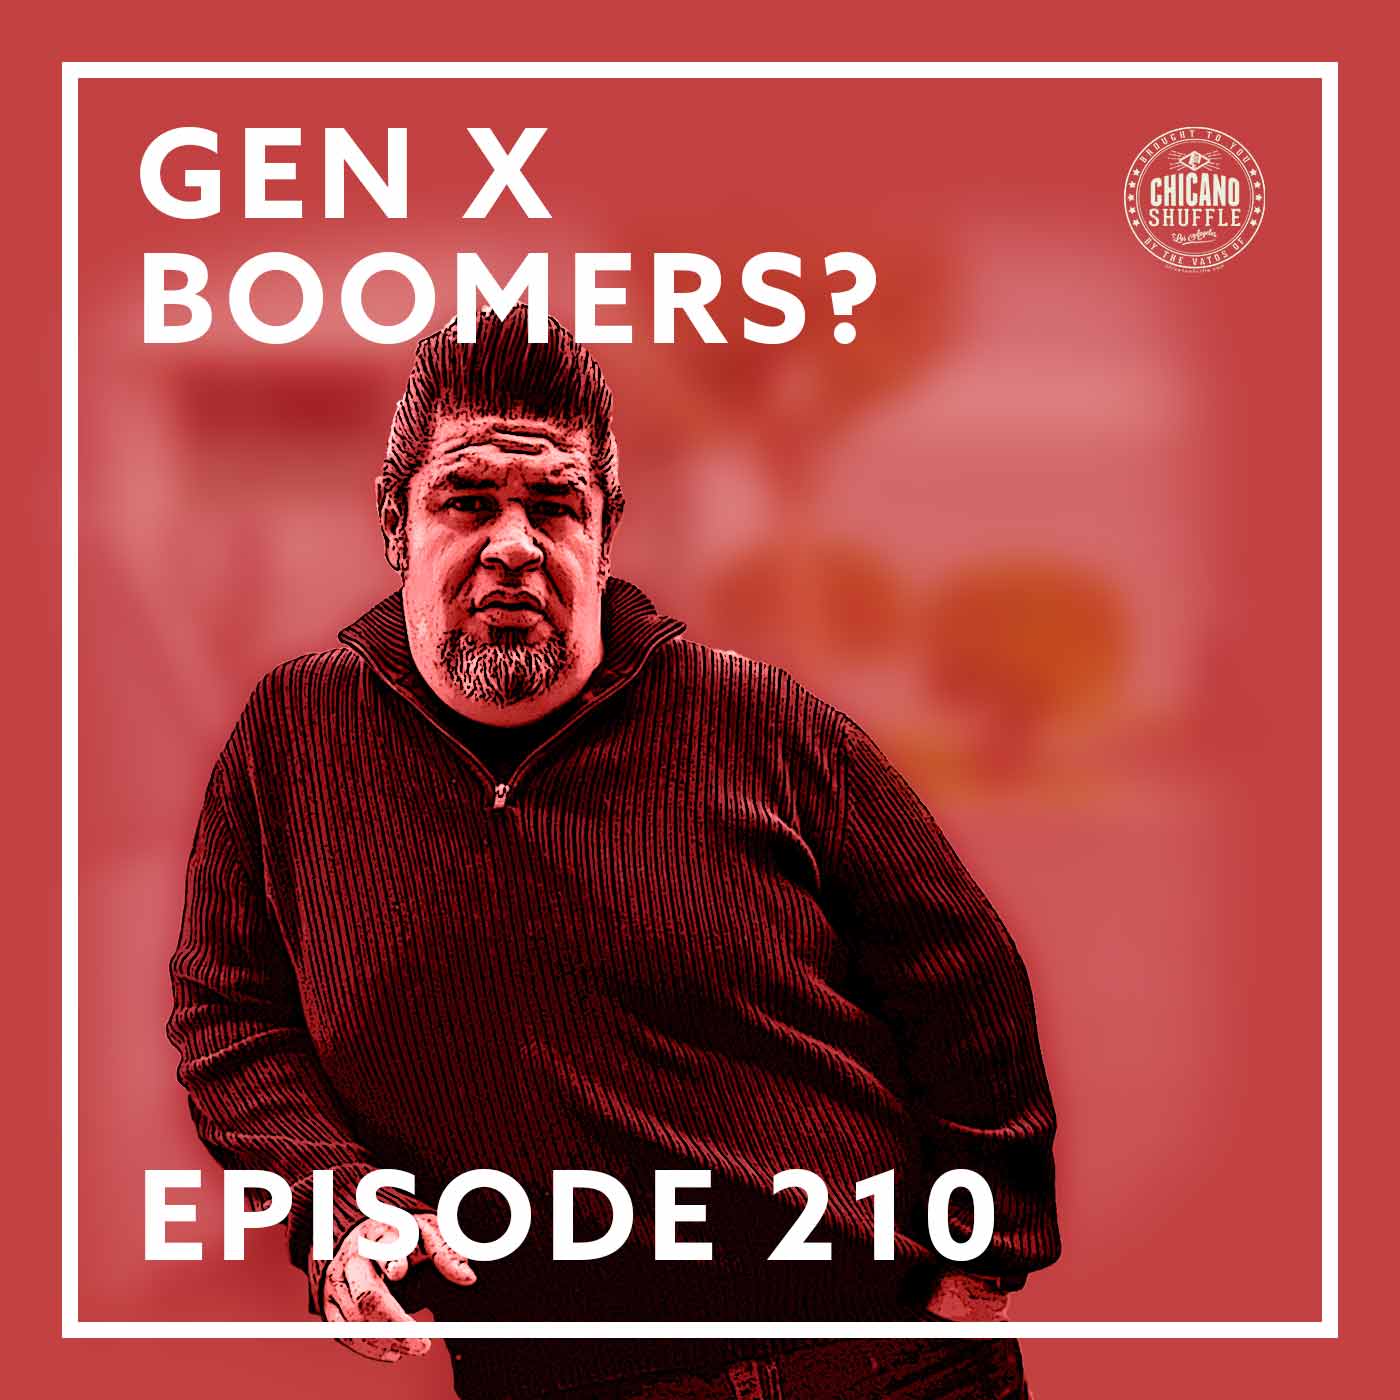 Episode 210 – Gen X Boomers?